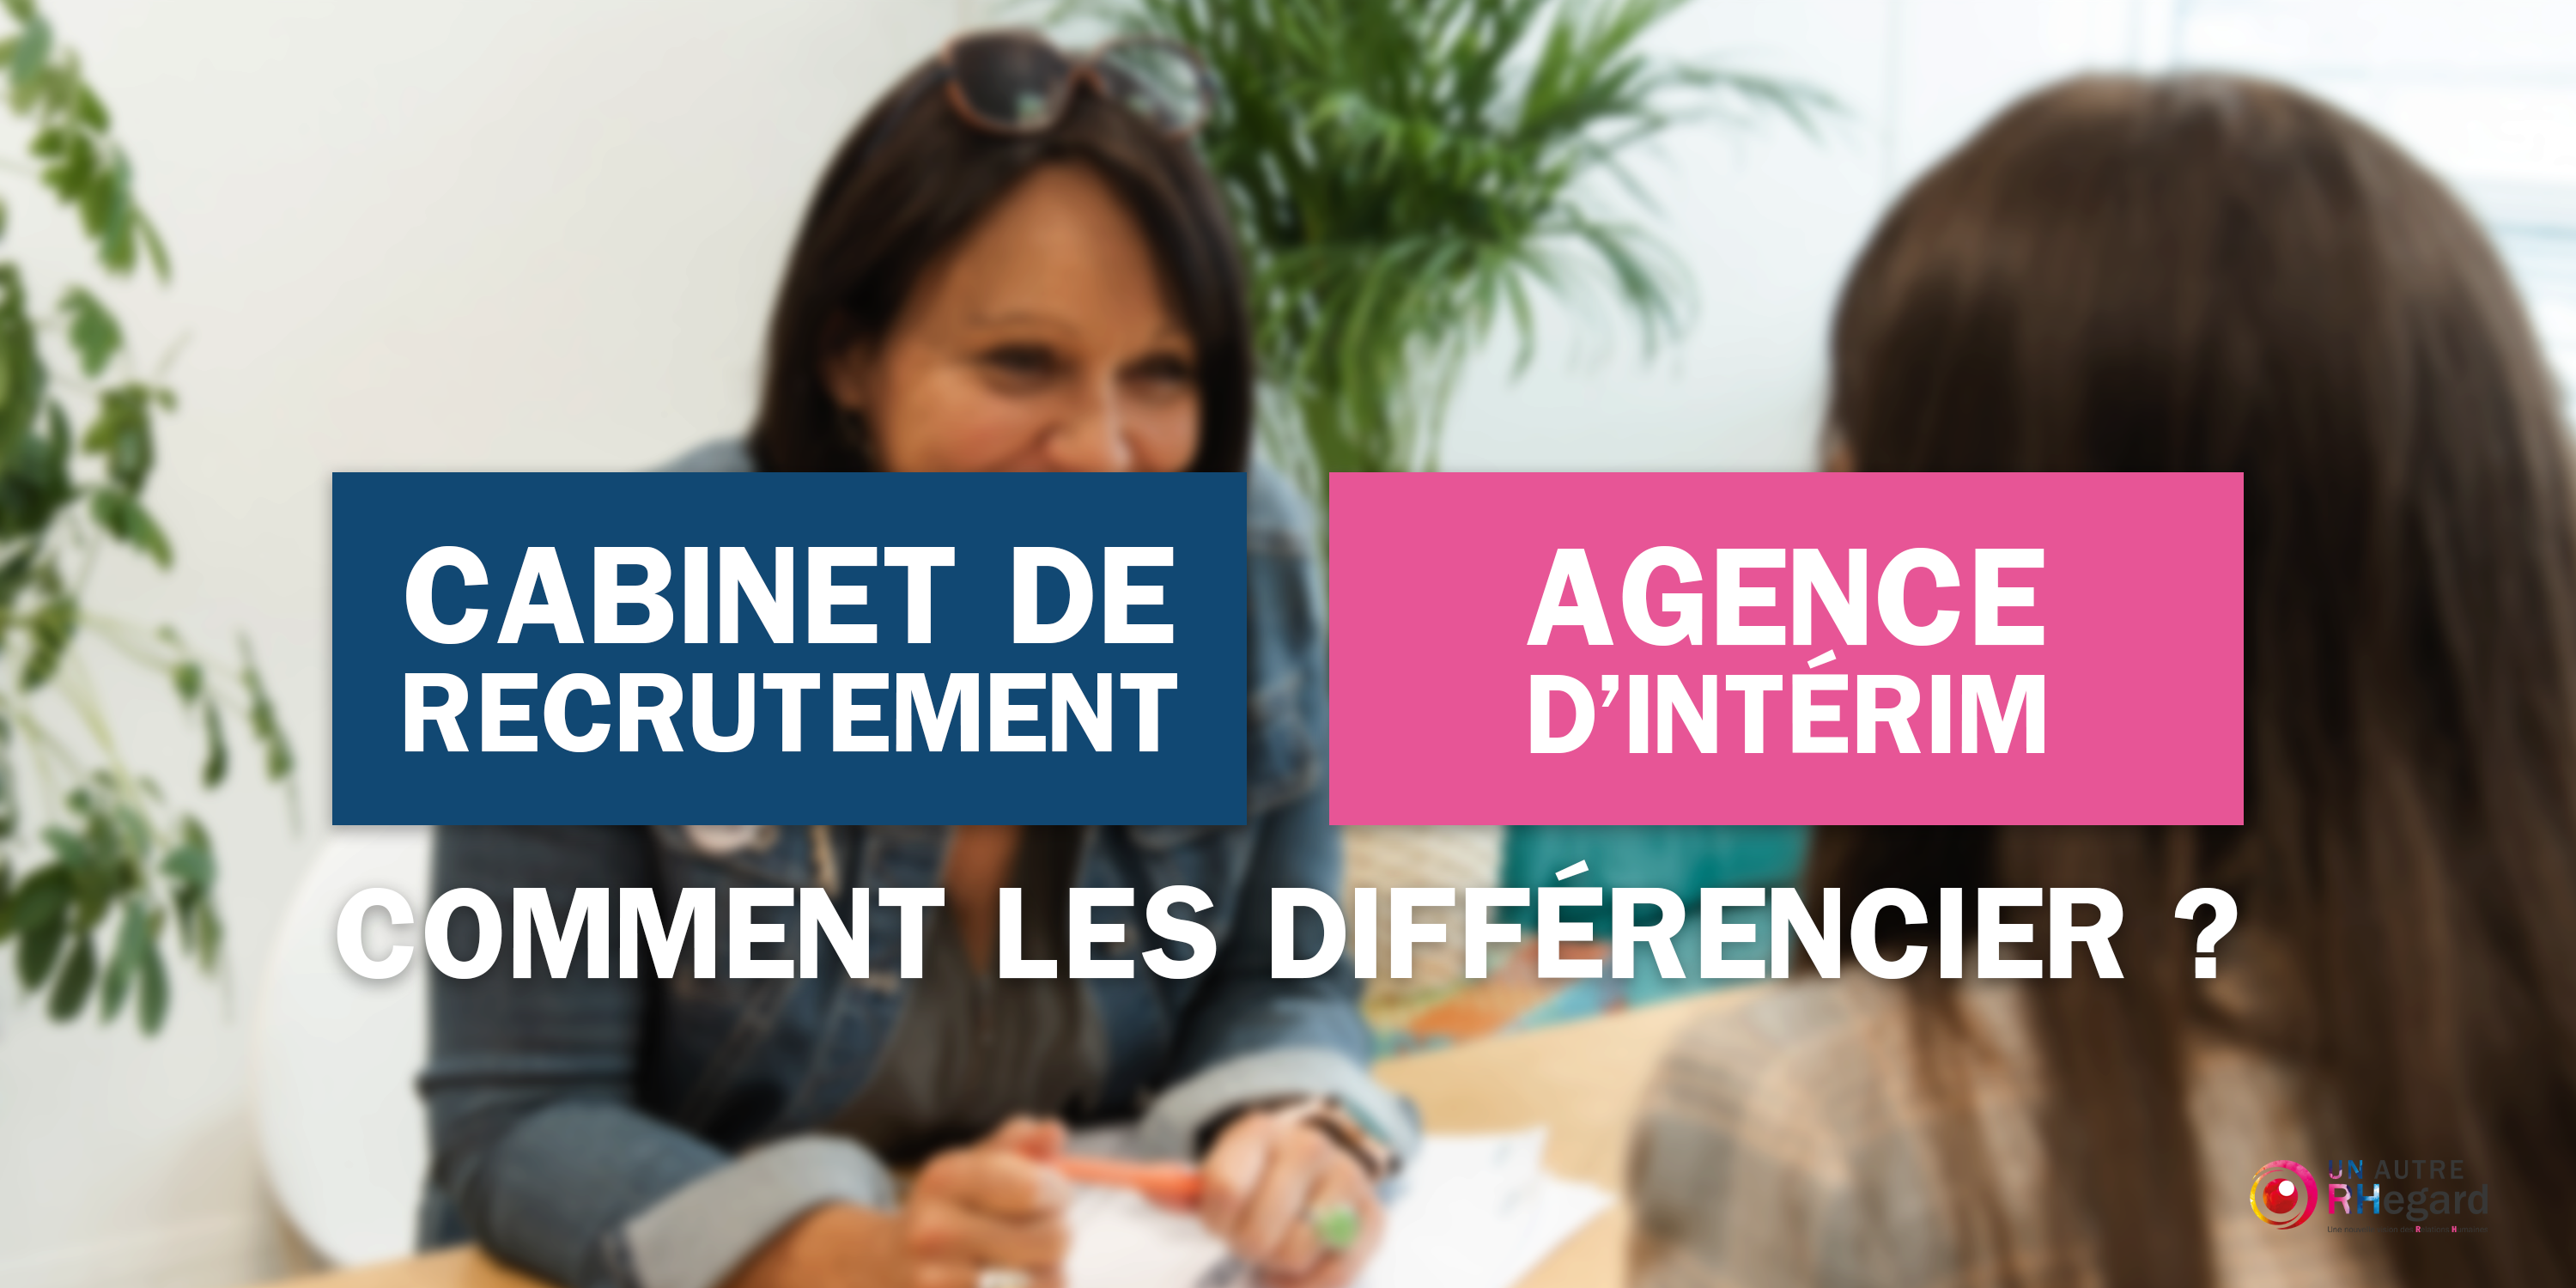 Quelles sont les différences entre un cabinet de recrutement et une agence d'intérim ?